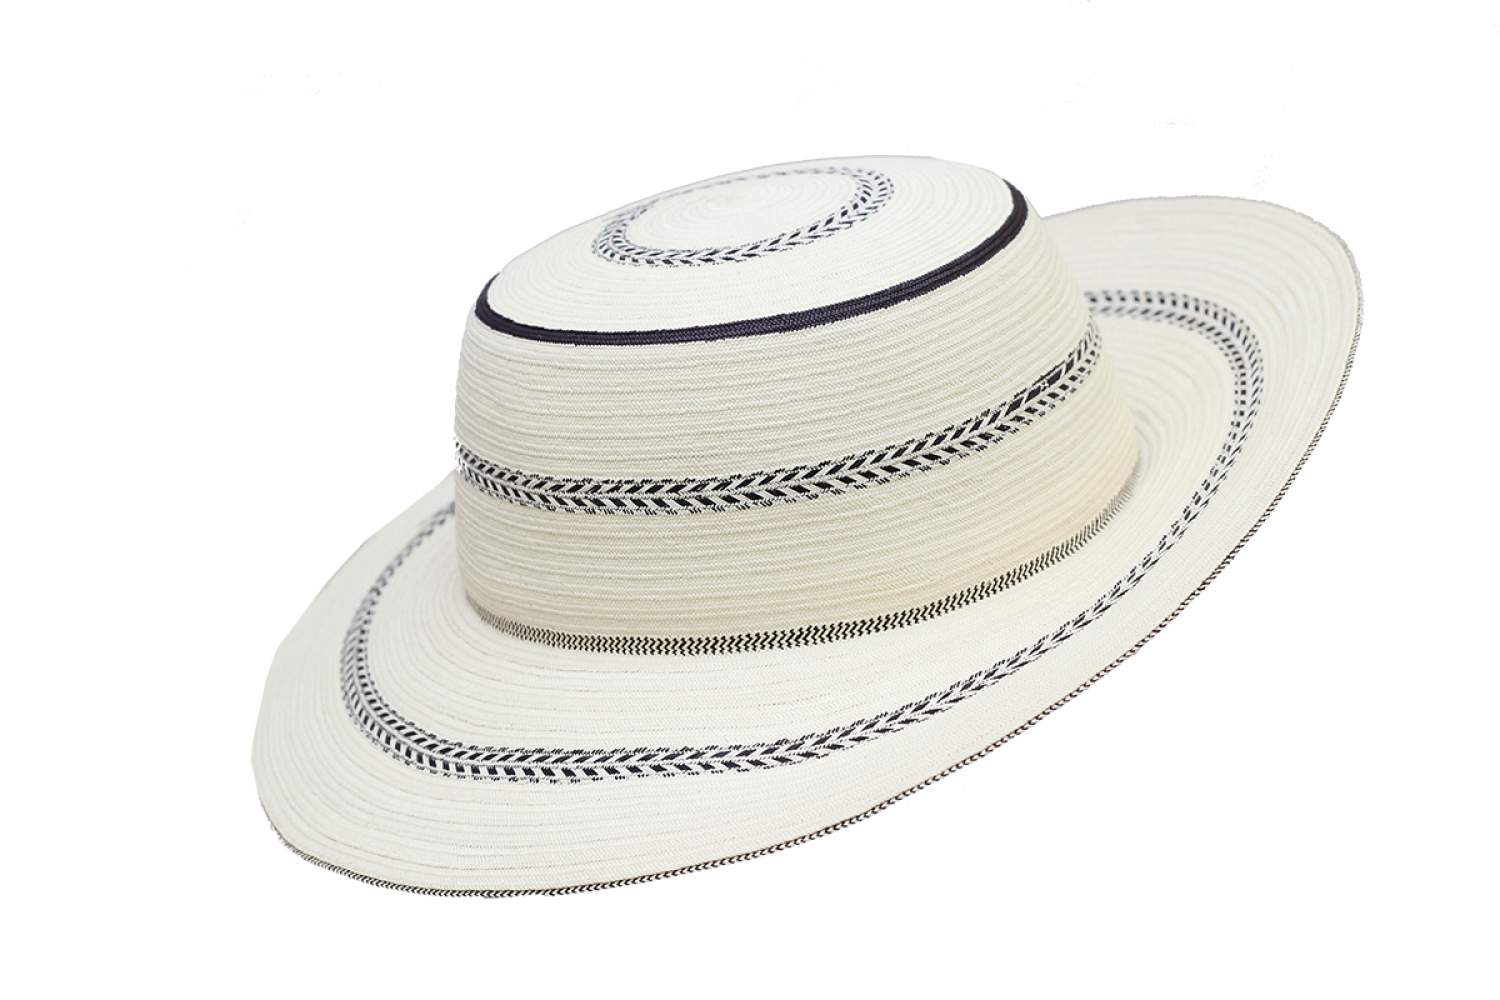 Sombrero Pinta'o, hand made from Panama